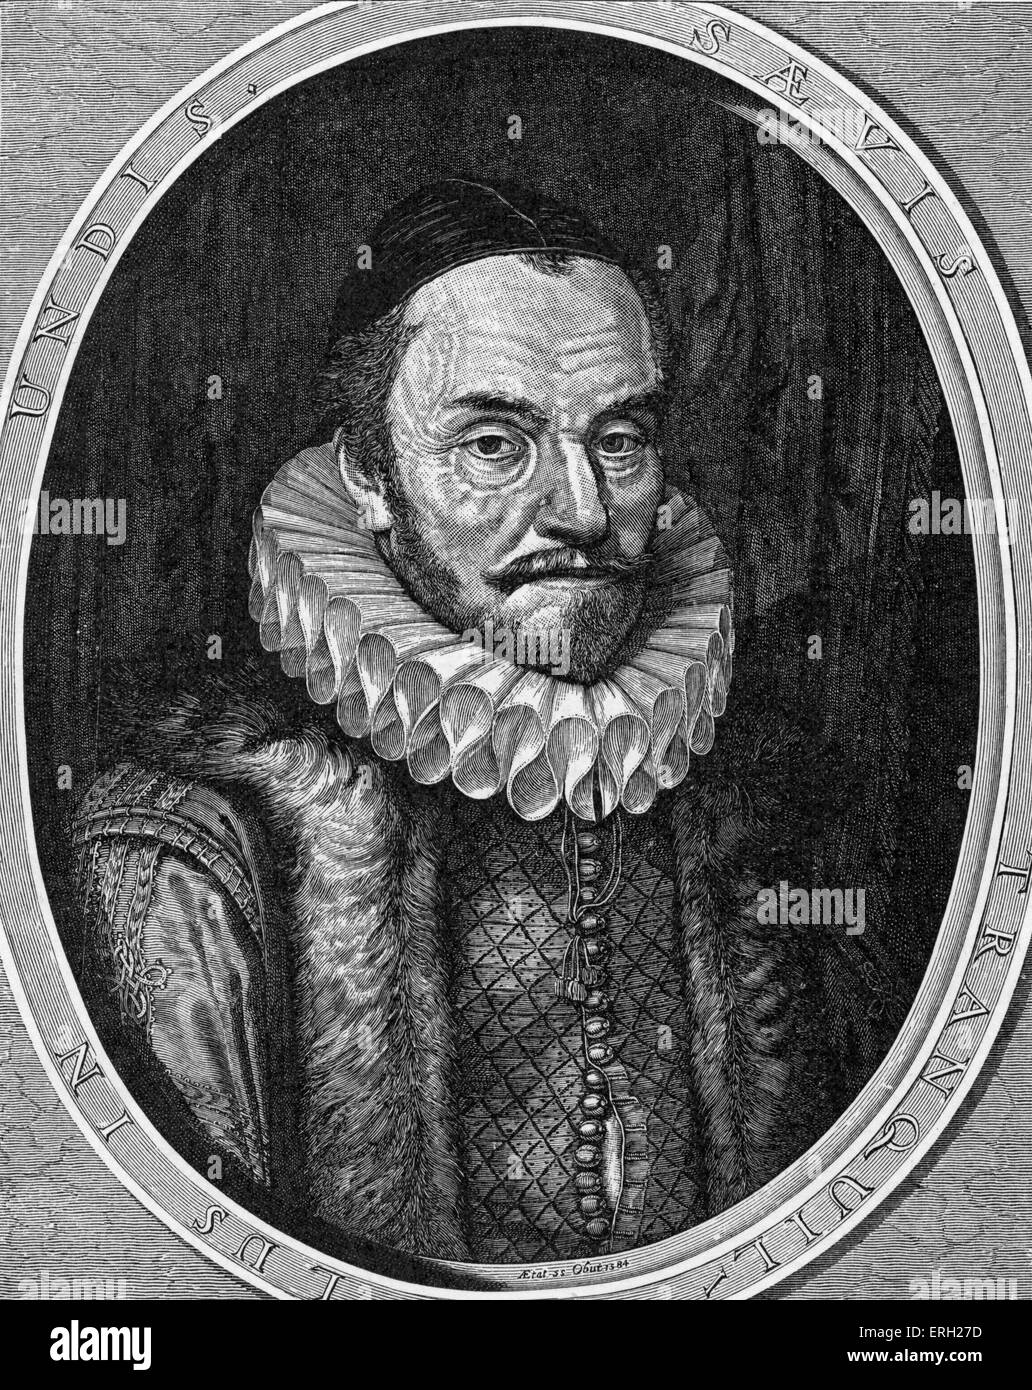 Guglielmo I, principe di Orange 24 aprile 1533- 10 luglio 1584, anche noto come William il silenzioso / Willem de Zwijger Foto Stock